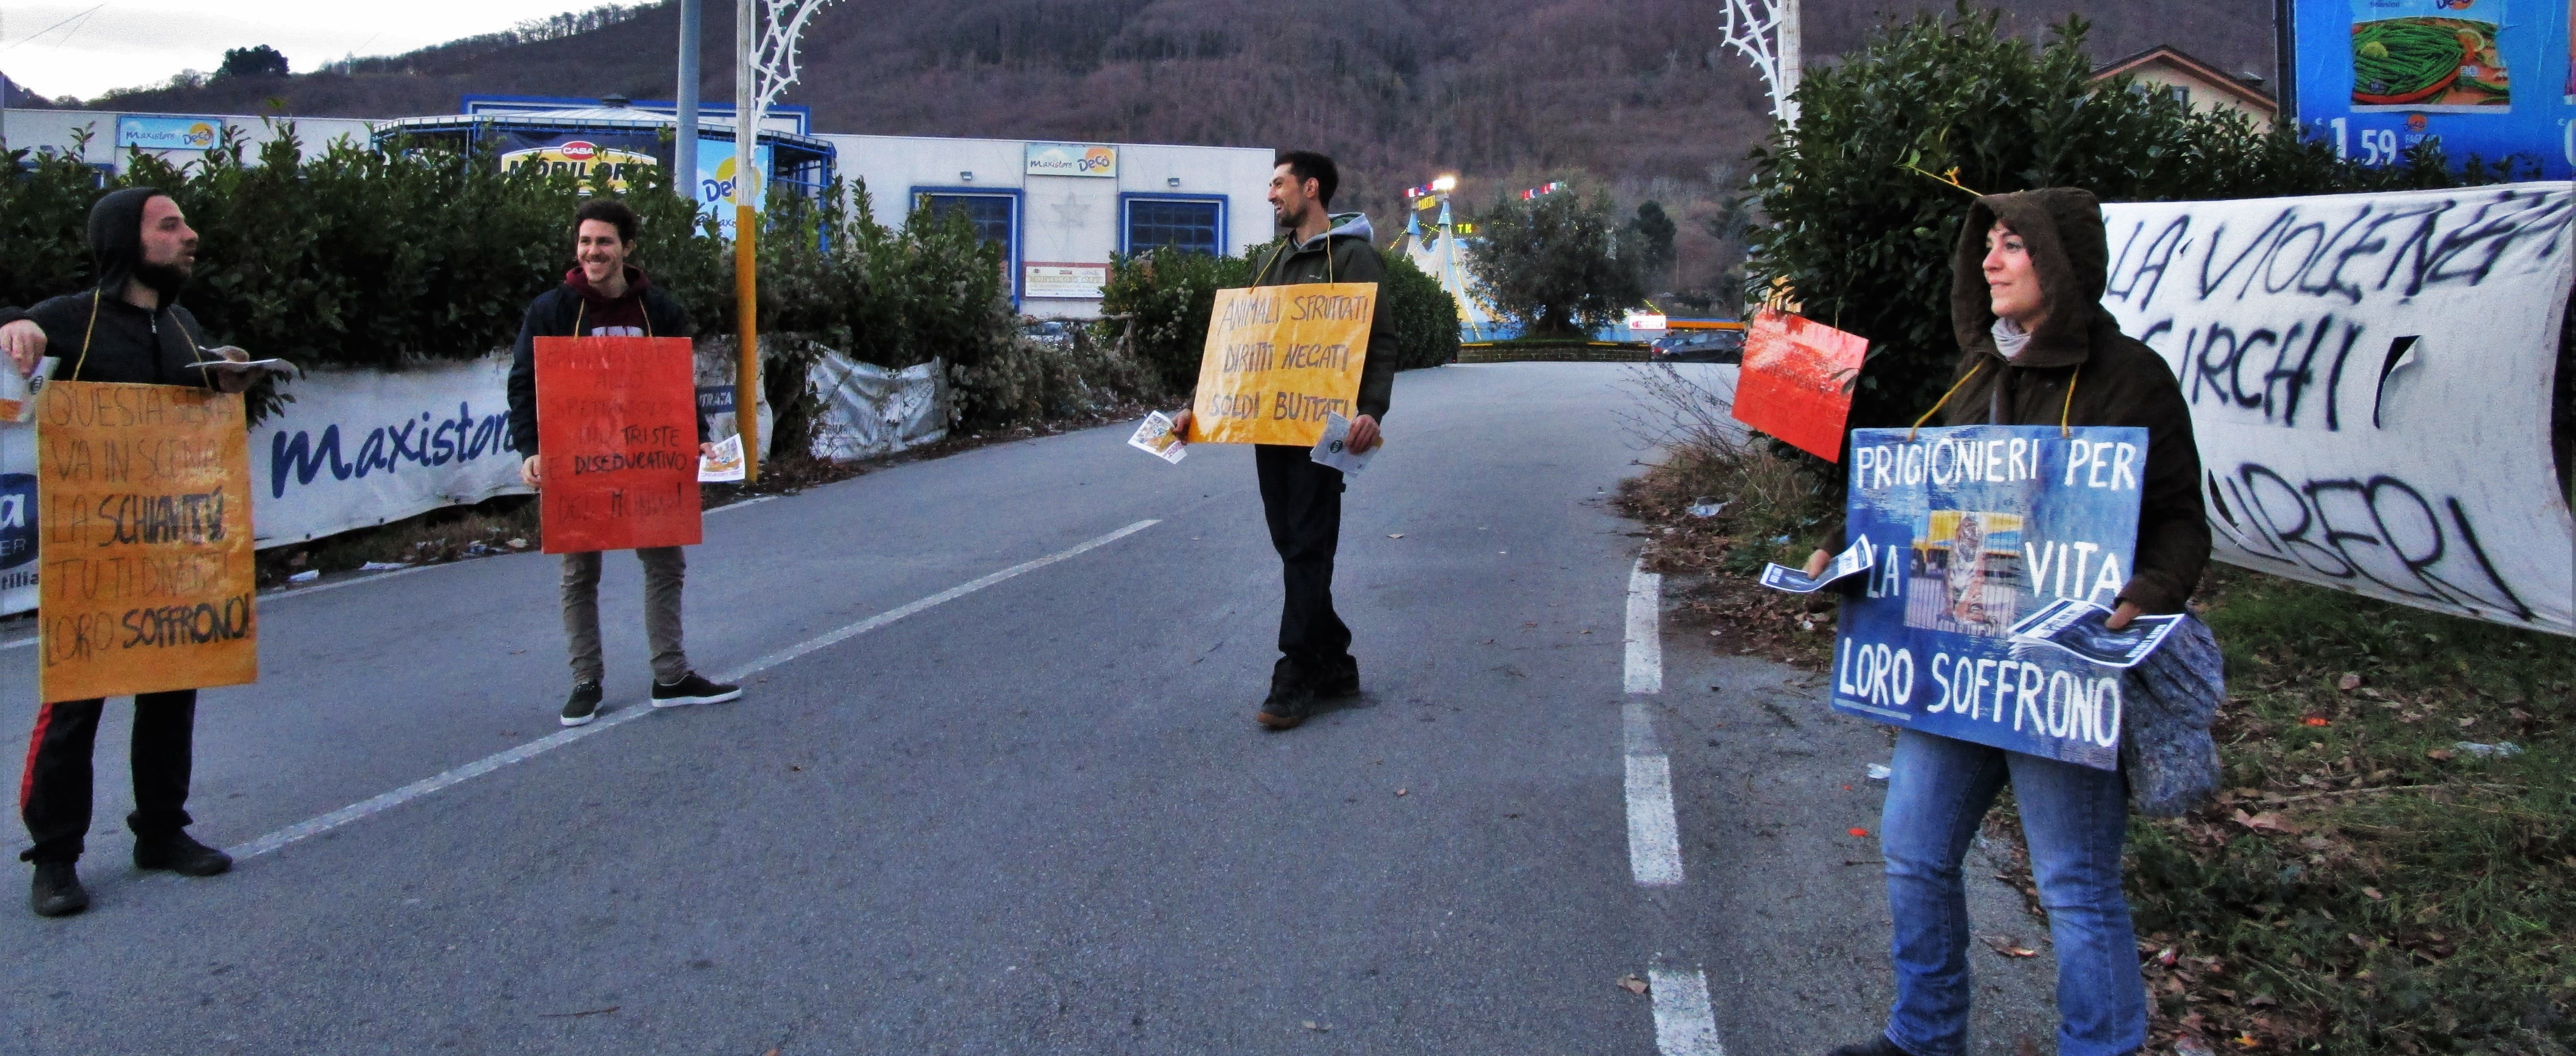 “Animali imprigionati e manifesti abusivi”, attivisti irpini contro il Circo a Monteforte